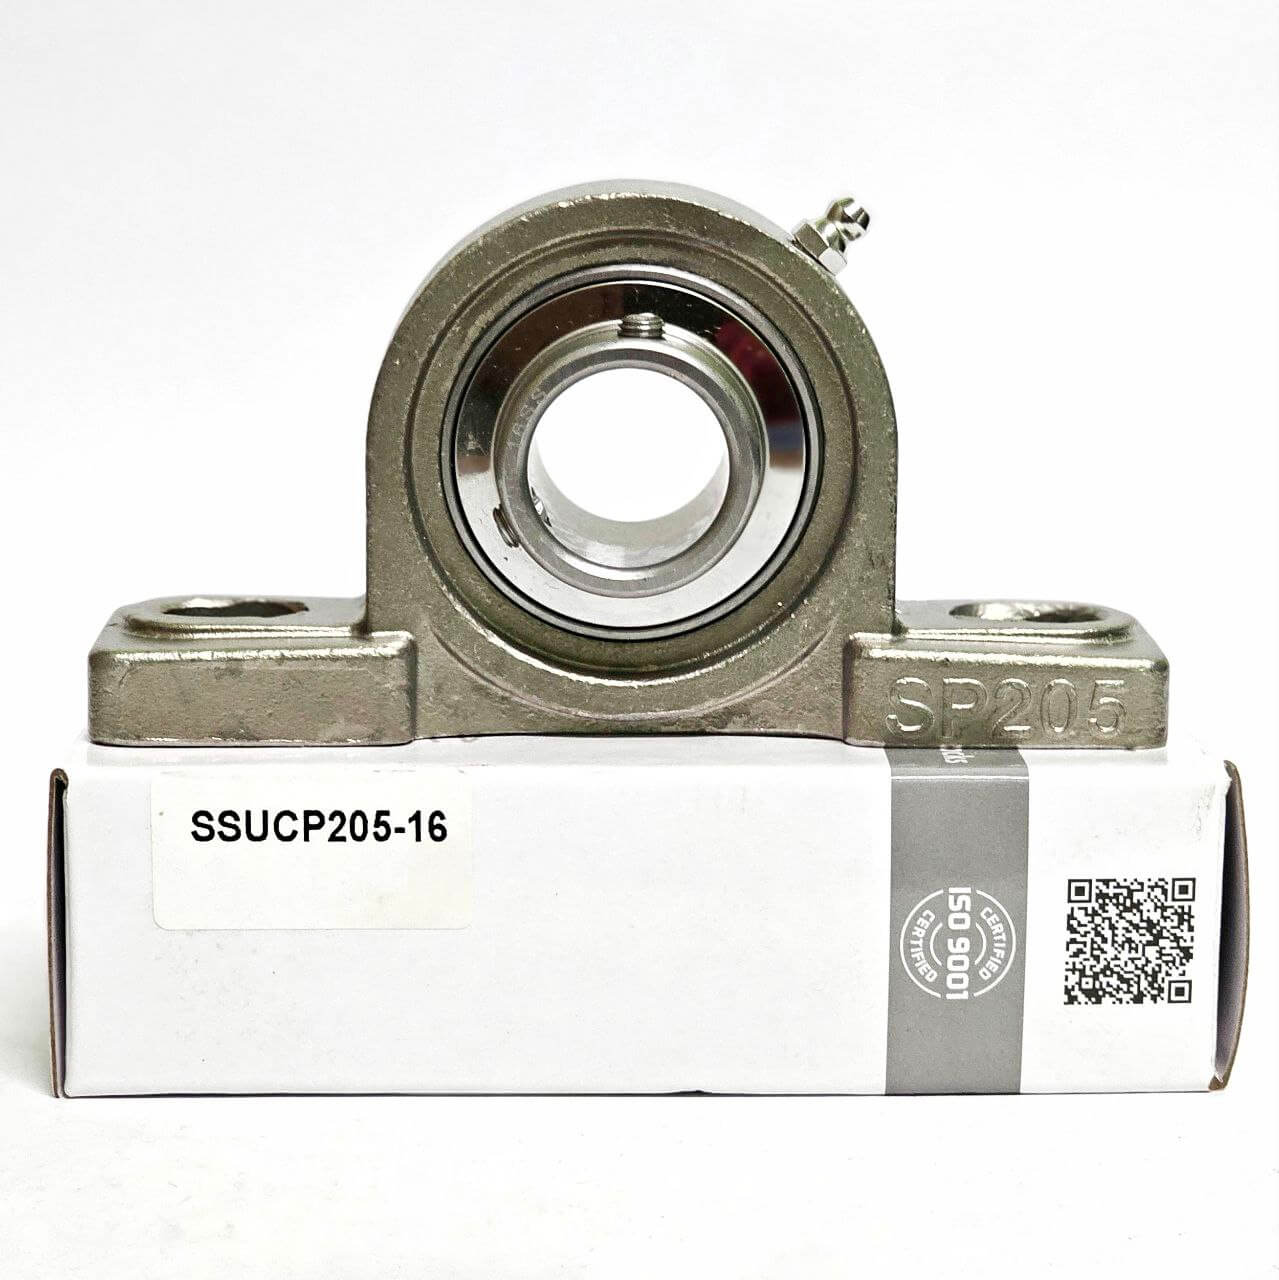 Soporte inoxidable SUCP205-16 para eje de 1" (25,4mm) con housing SP205